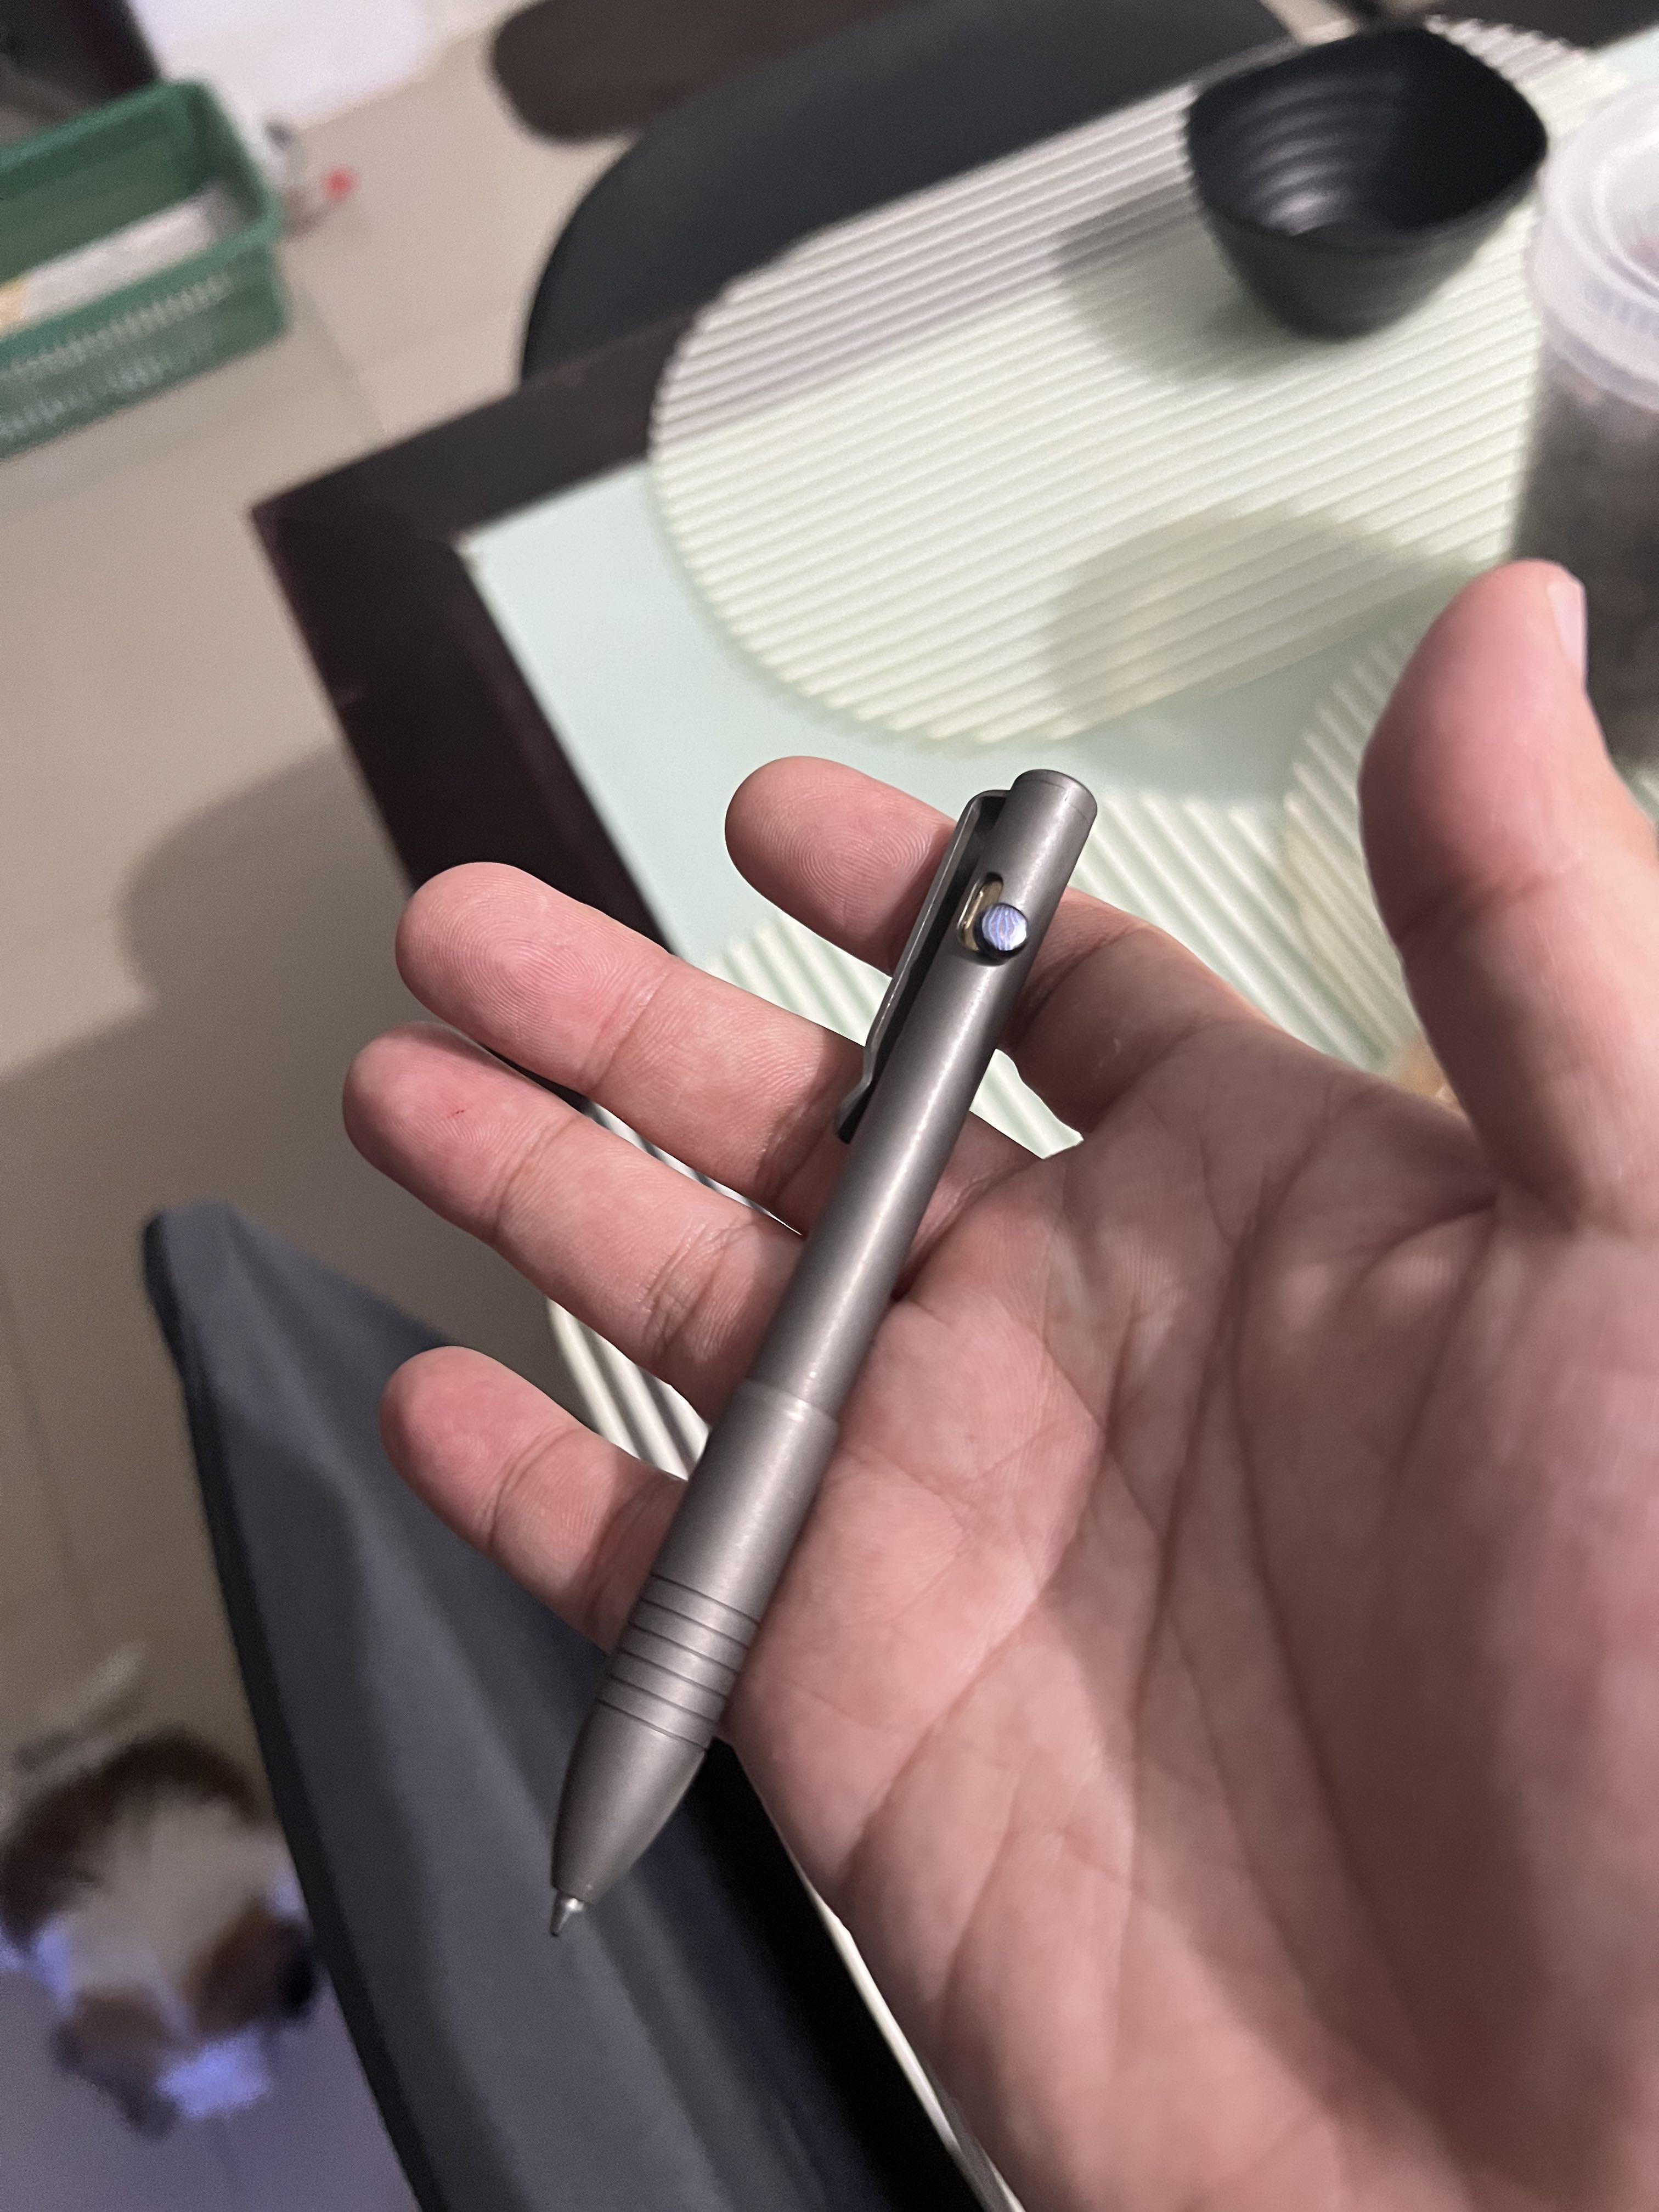 Big Idea Design - Mini Bolt Action Pen